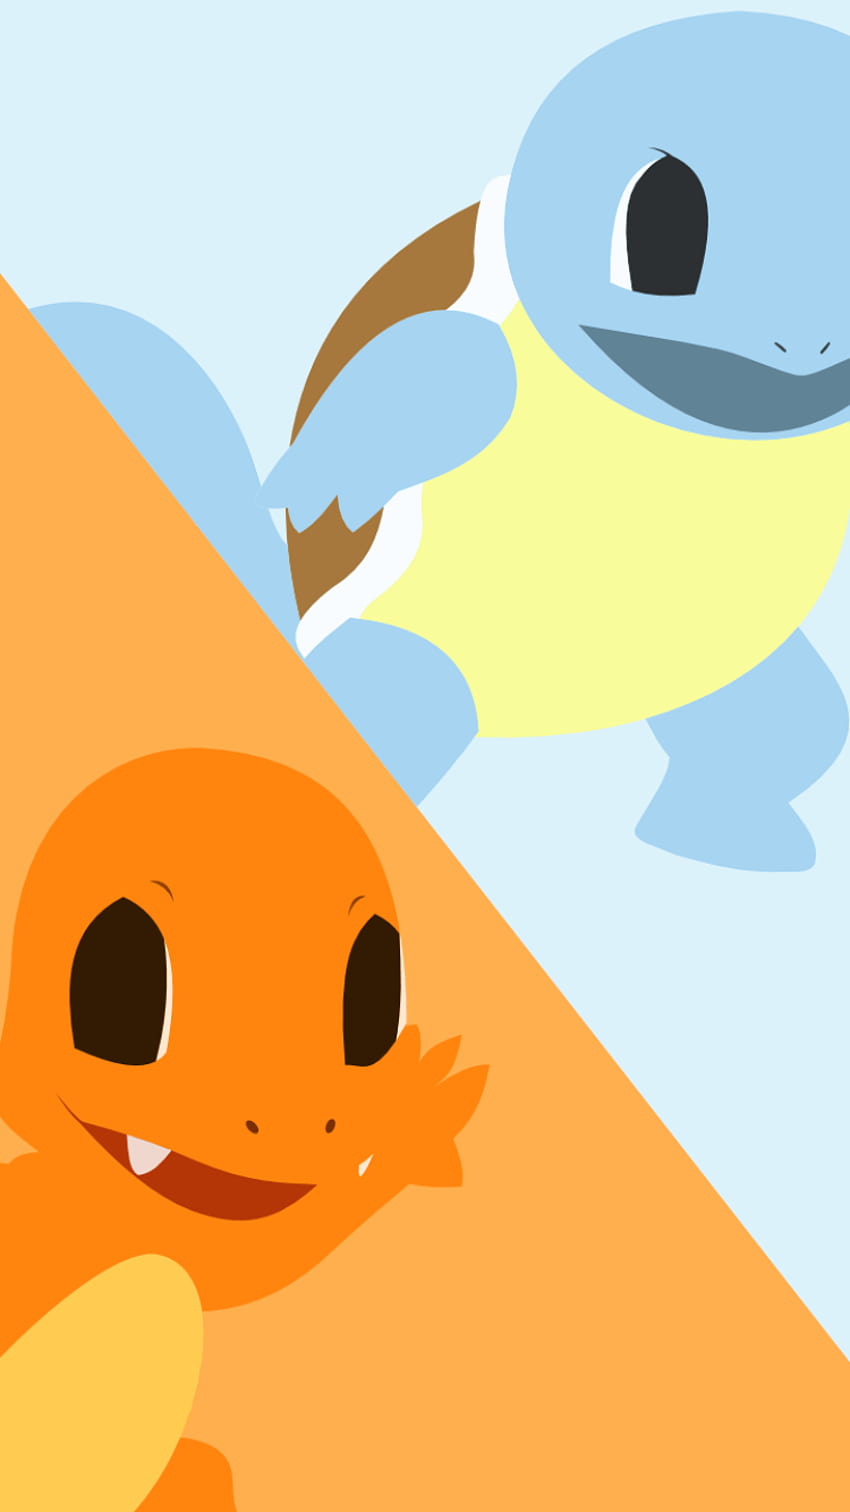 Videojuego Pokémon (), Charmander y Pikachu fondo de pantalla del teléfono